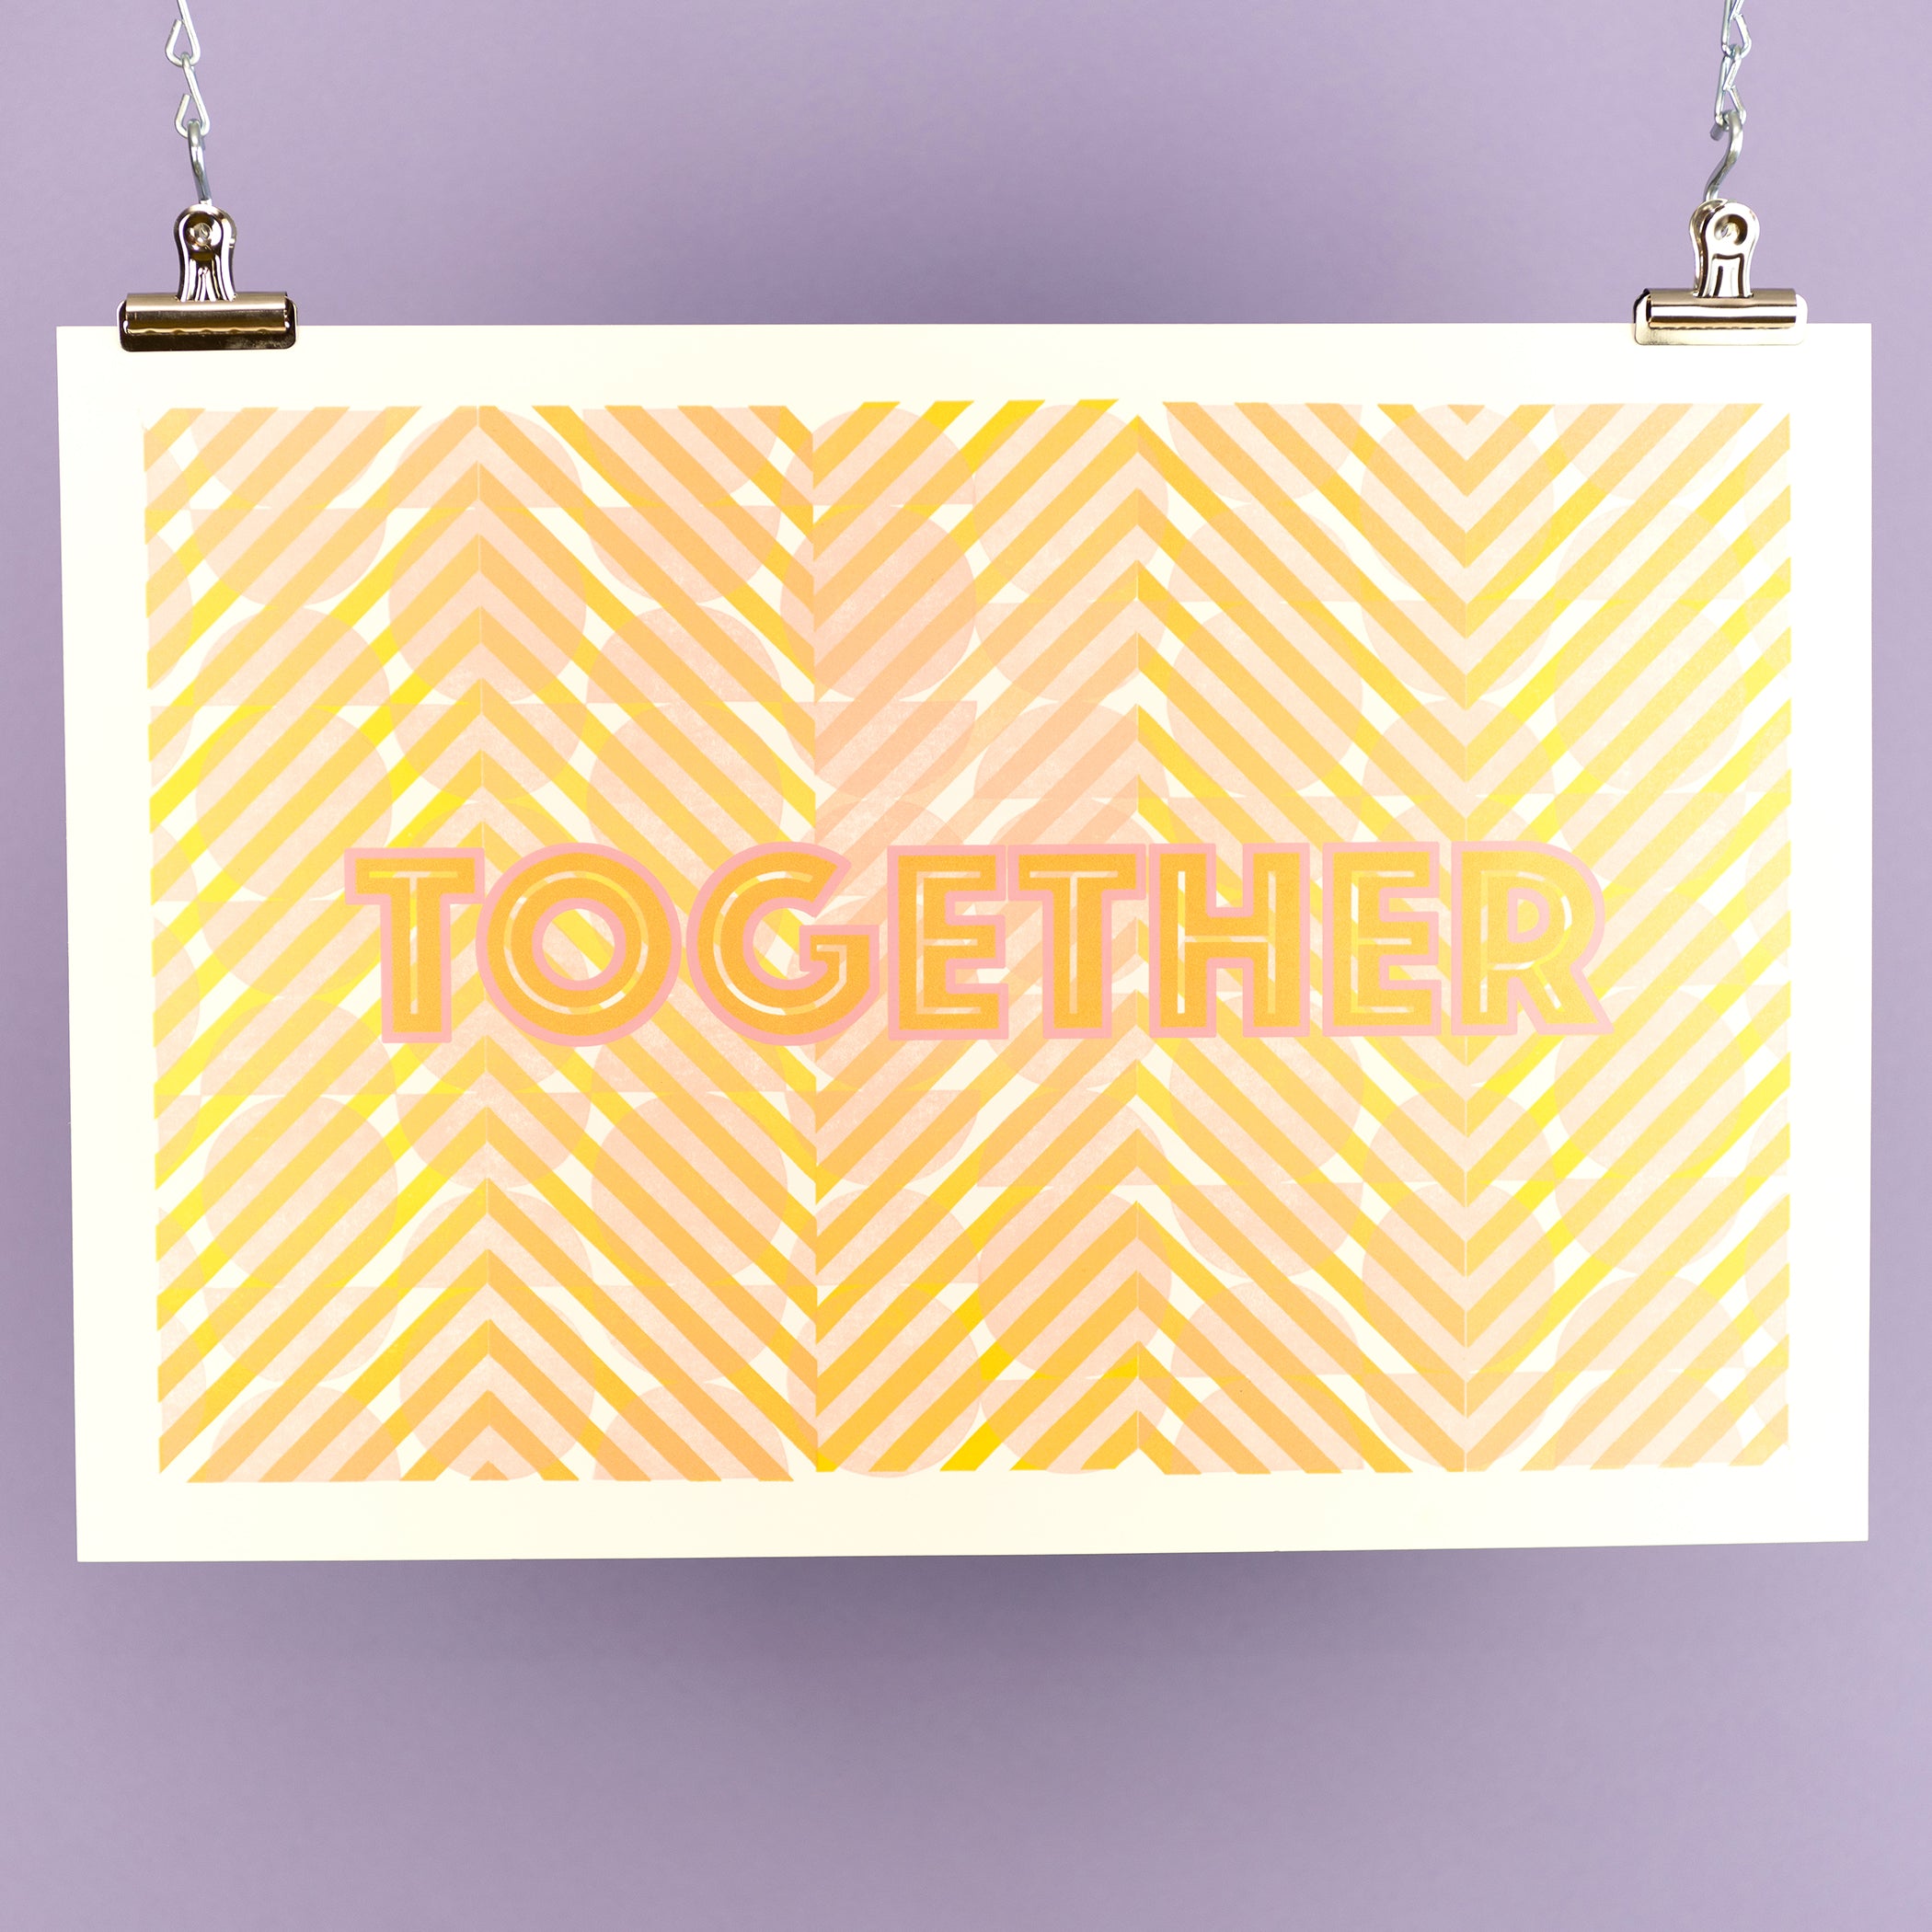 Together - Letterpress Print